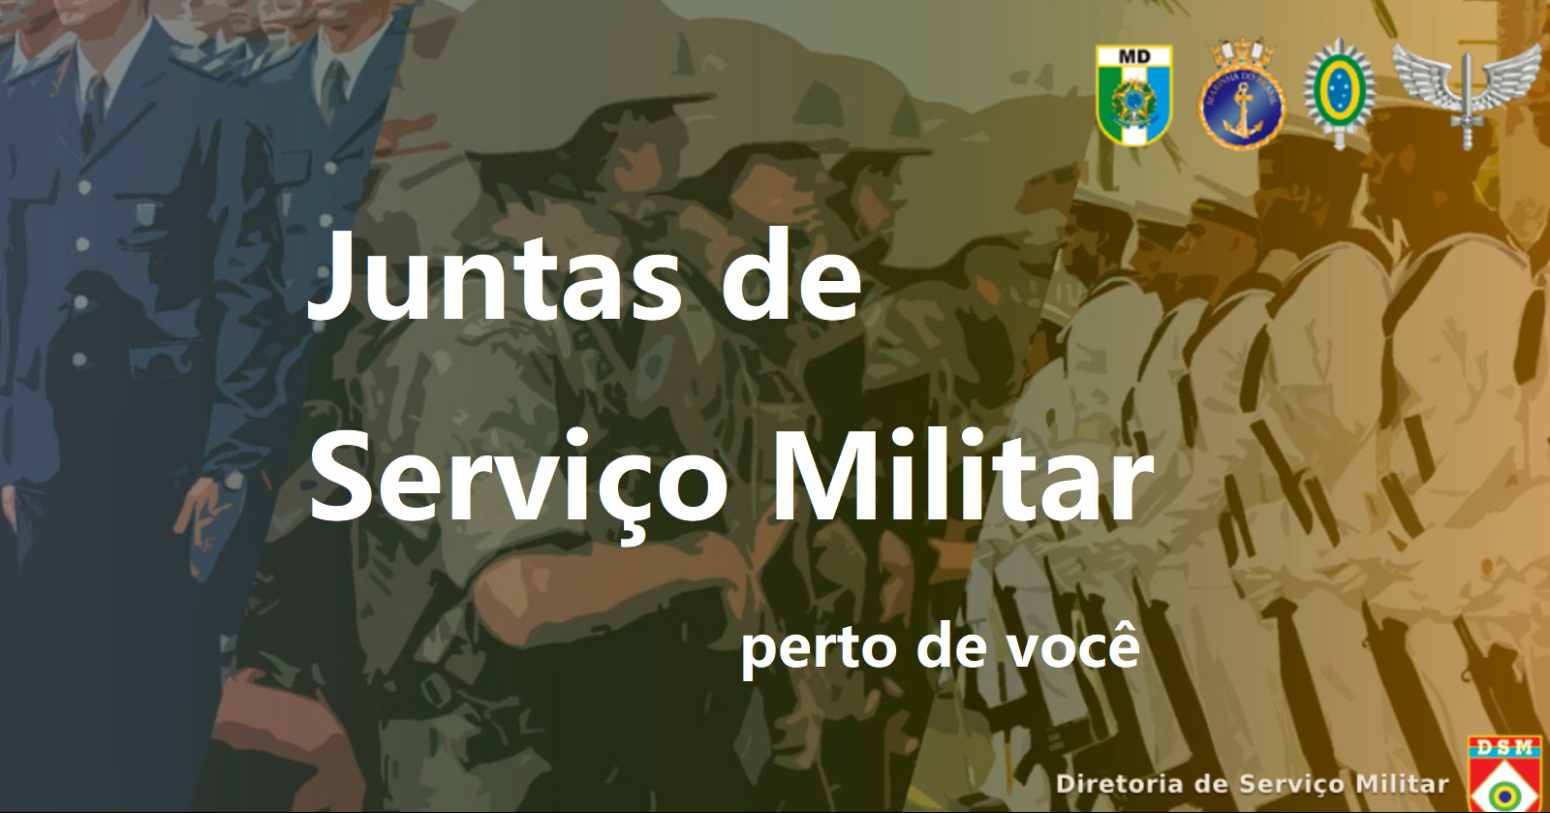 JSM MG – lista completa das Juntas de Serviço Militar em Minas Gerais